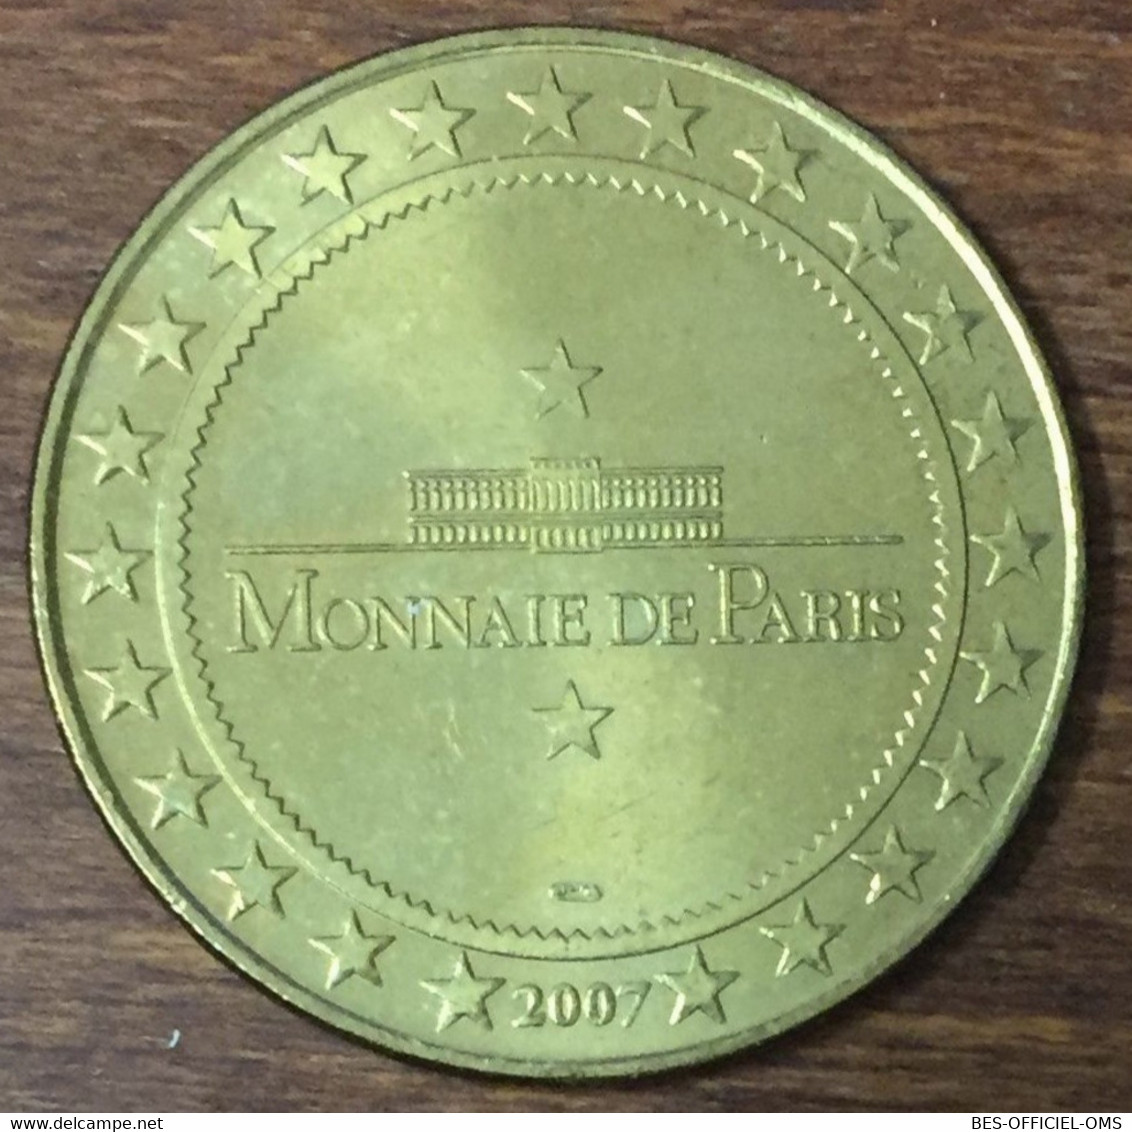 64 BAYONNE LA CATHÉDRALE MDP 2007 MÉDAILLE SOUVENIR MONNAIE DE PARIS JETON TOURISTIQUE MEDALS COINS TOKENS - 2007